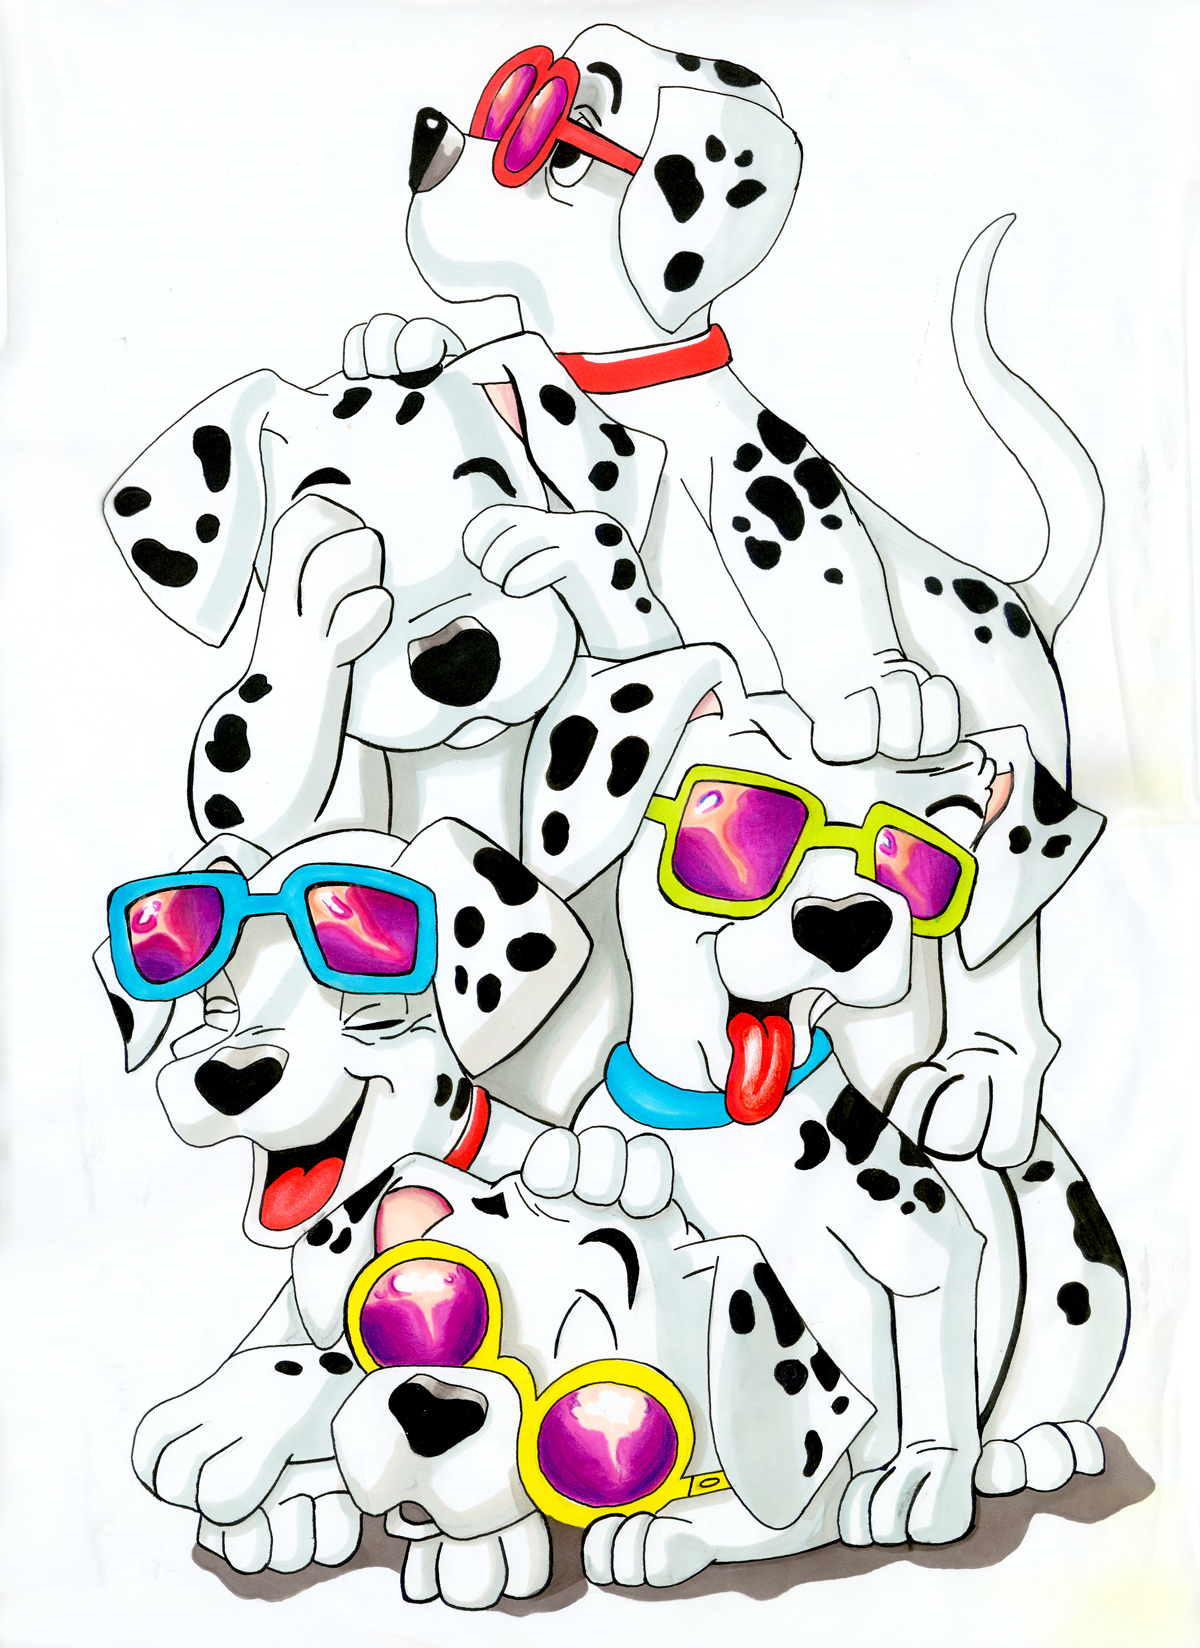 Dalmatians Wallpaper Image For Mac Cartoons